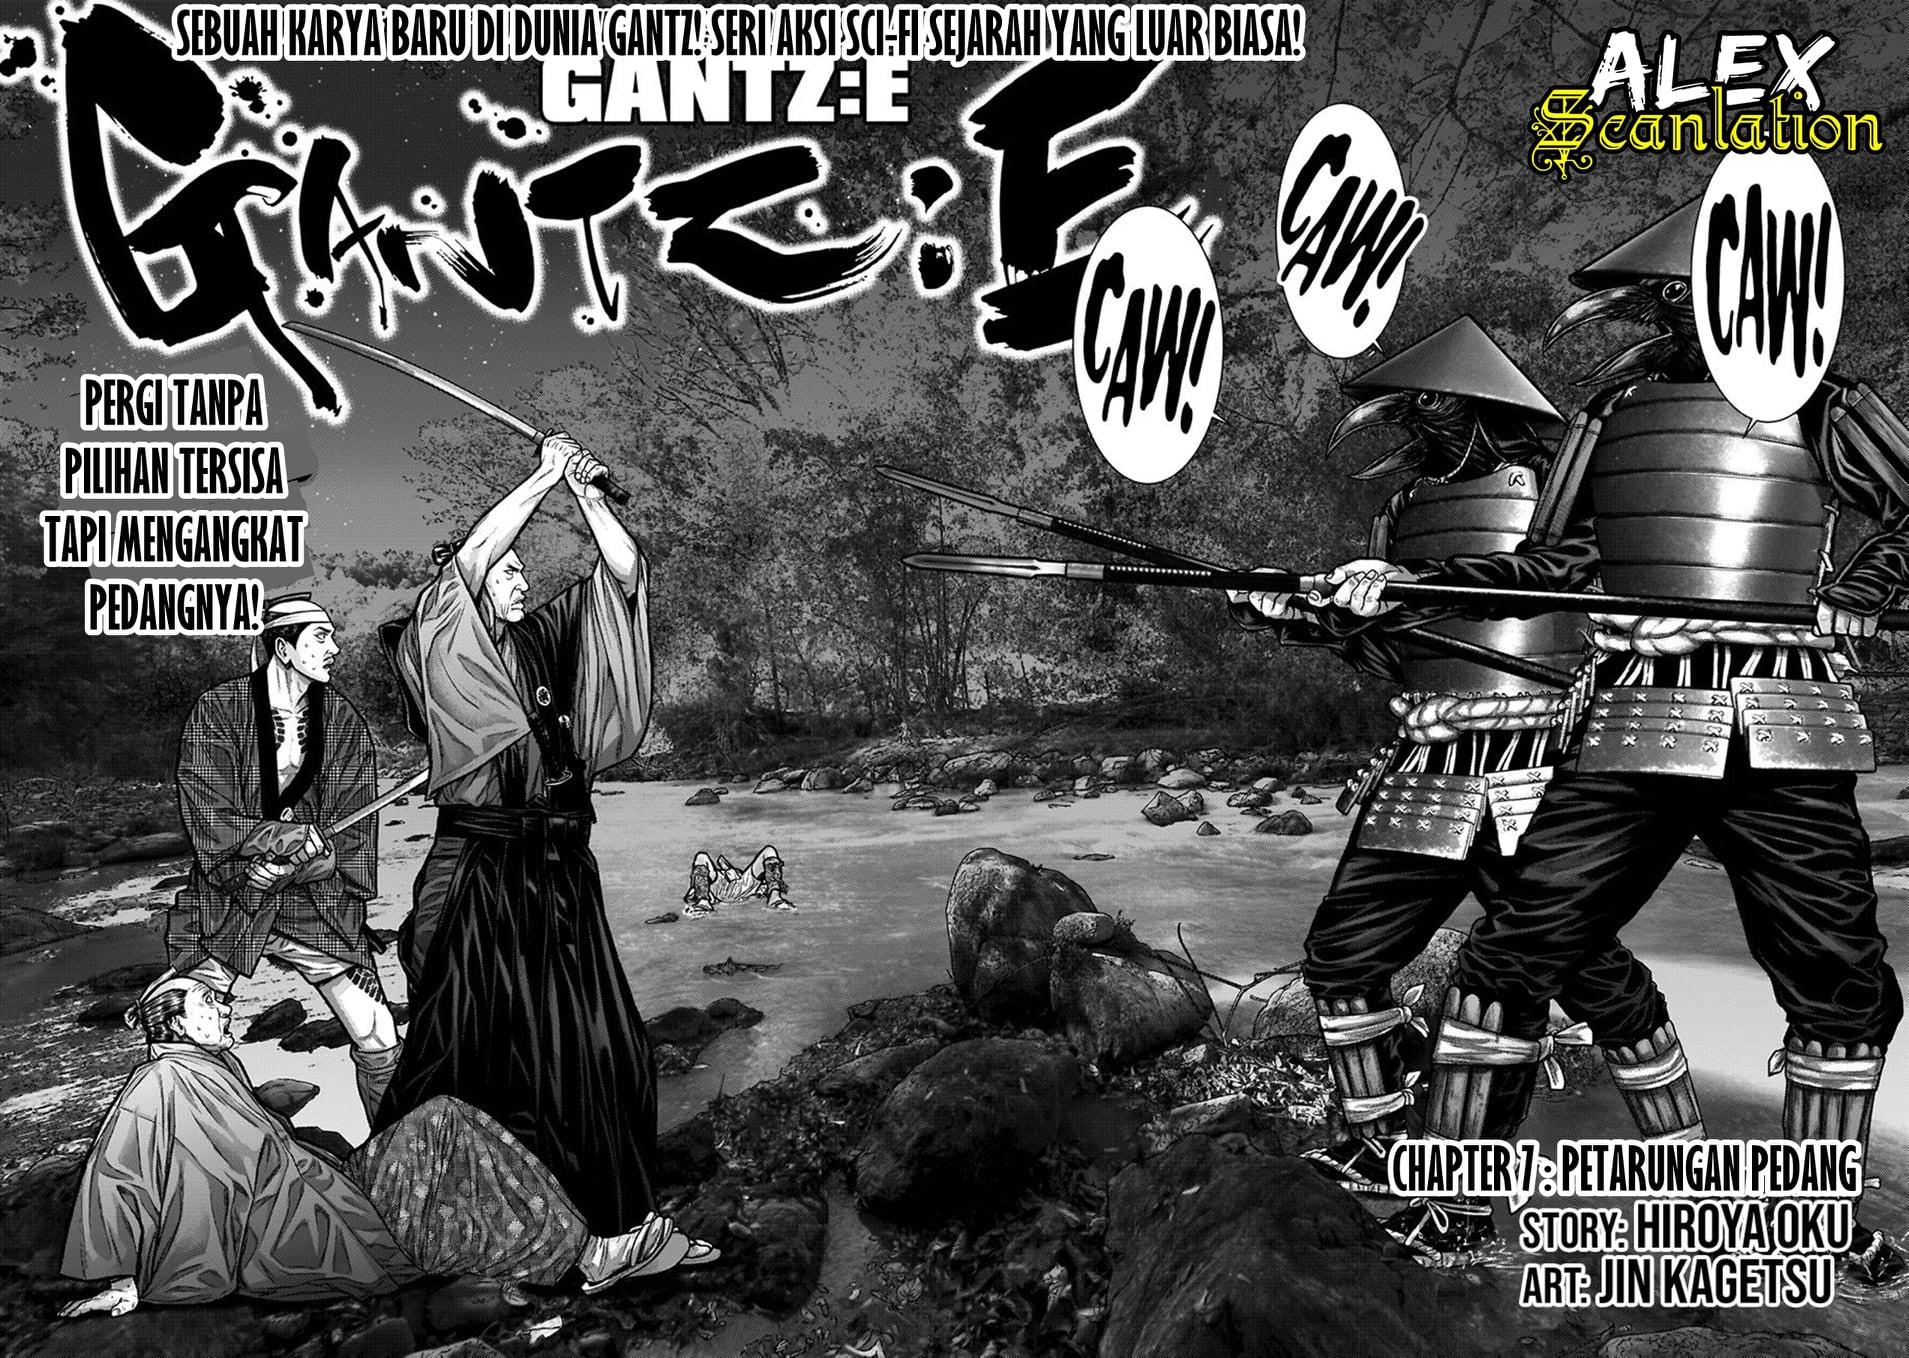 Gantz:E Chapter 7